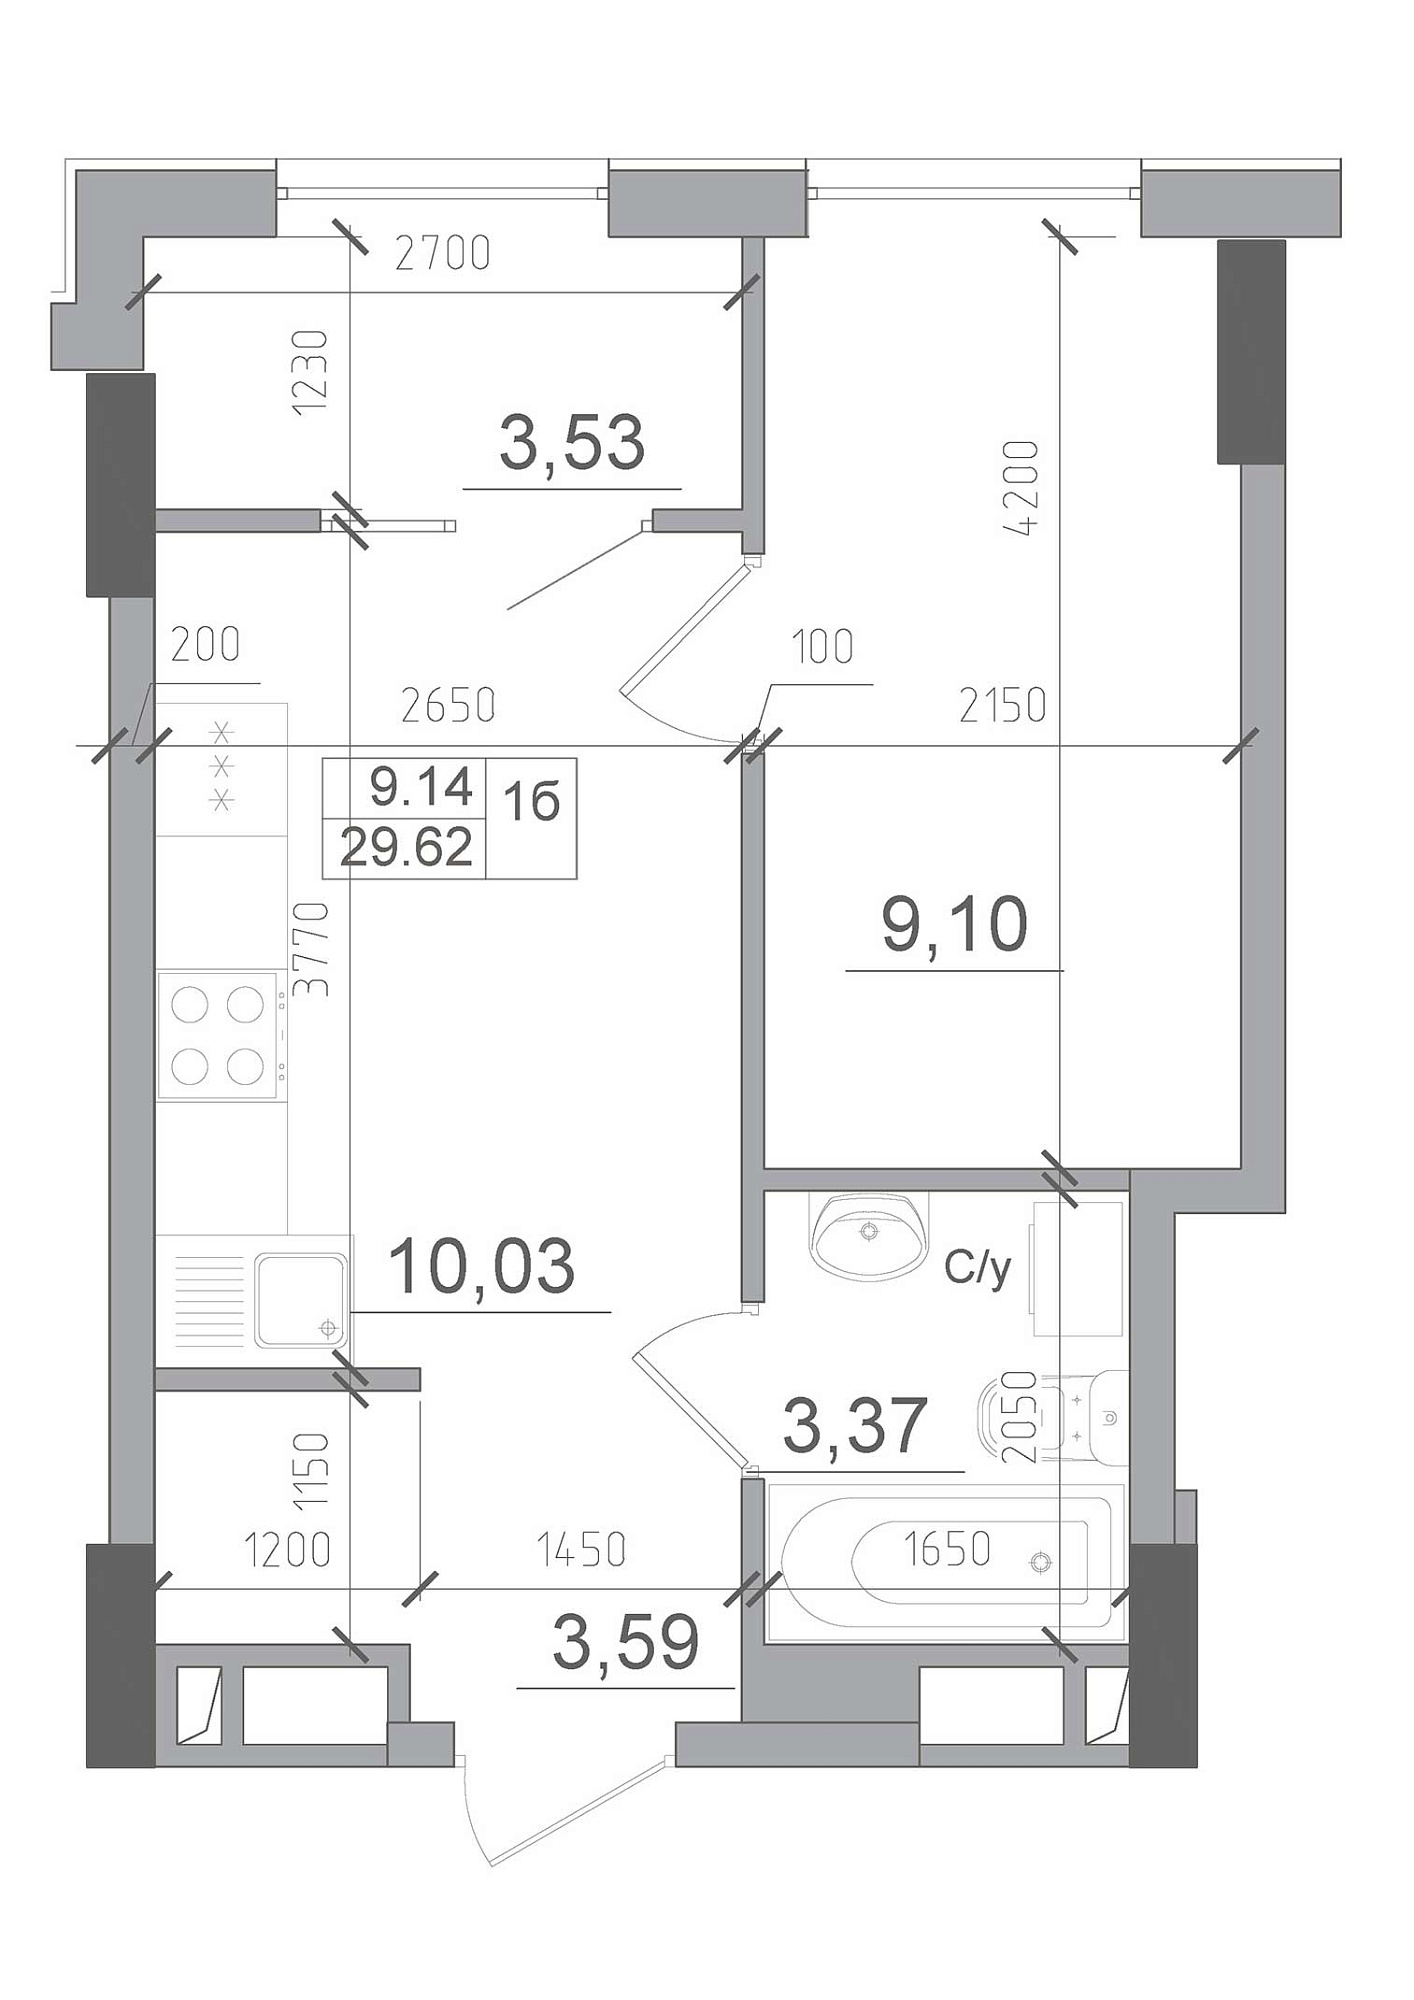 Планування 1-к квартира площею 29.62м2, AB-22-02/00002.